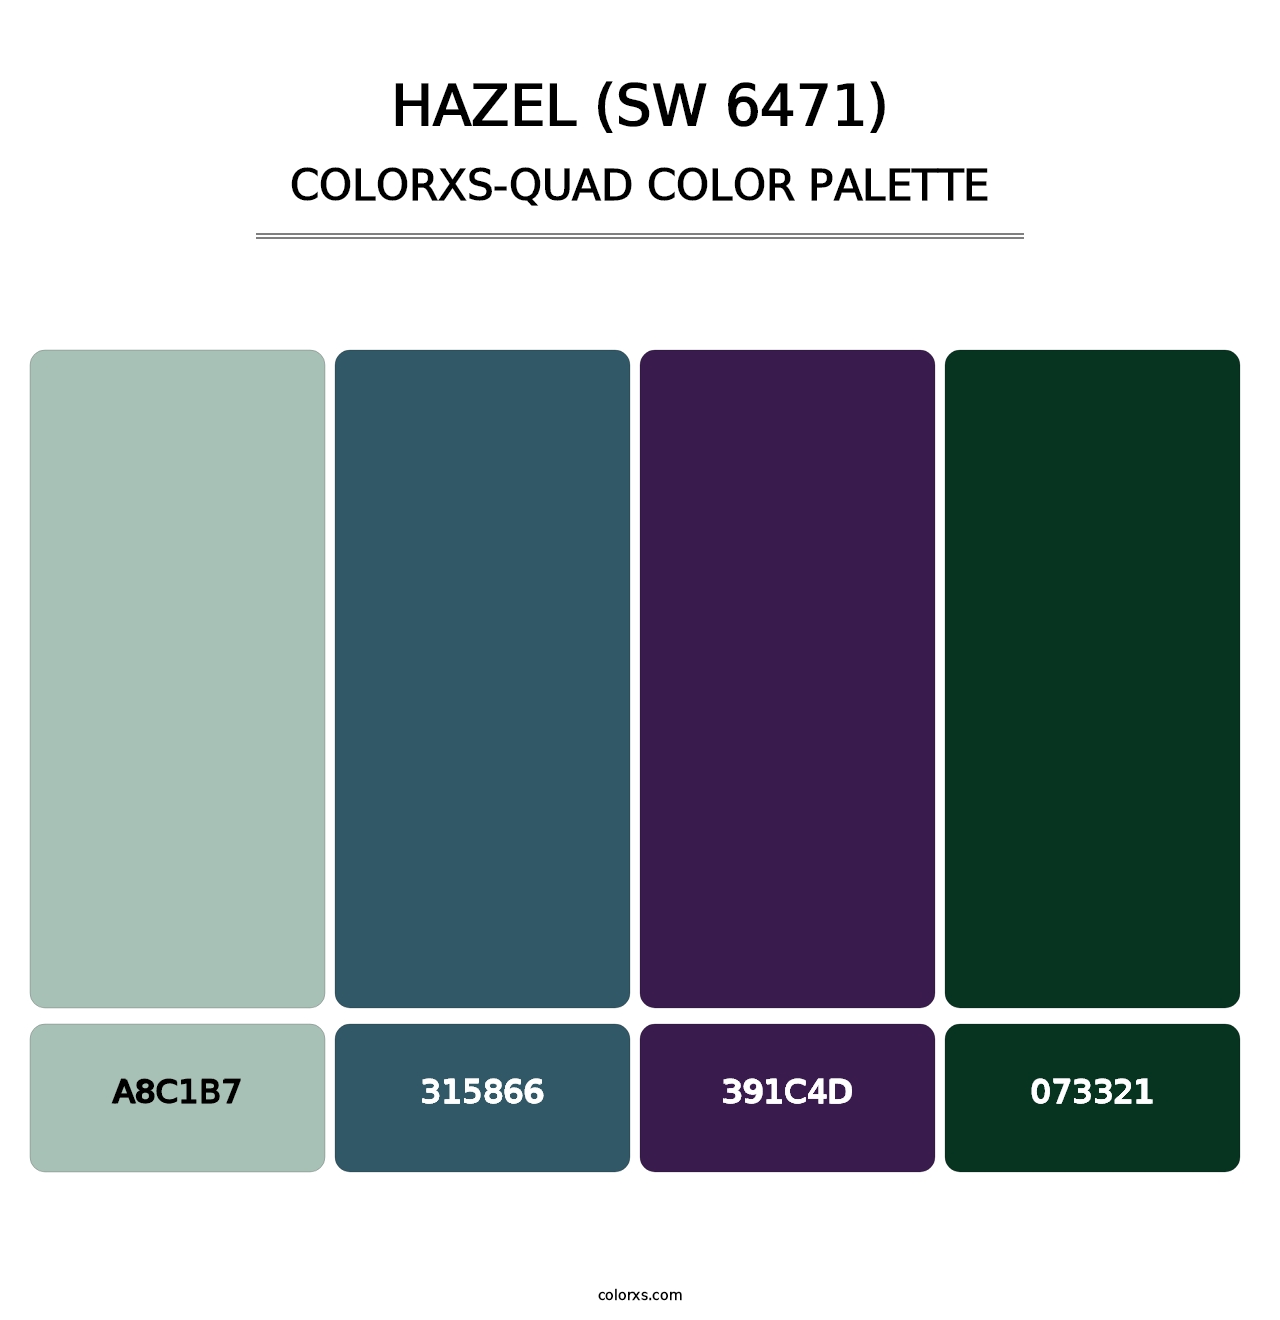 Hazel (SW 6471) - Colorxs Quad Palette